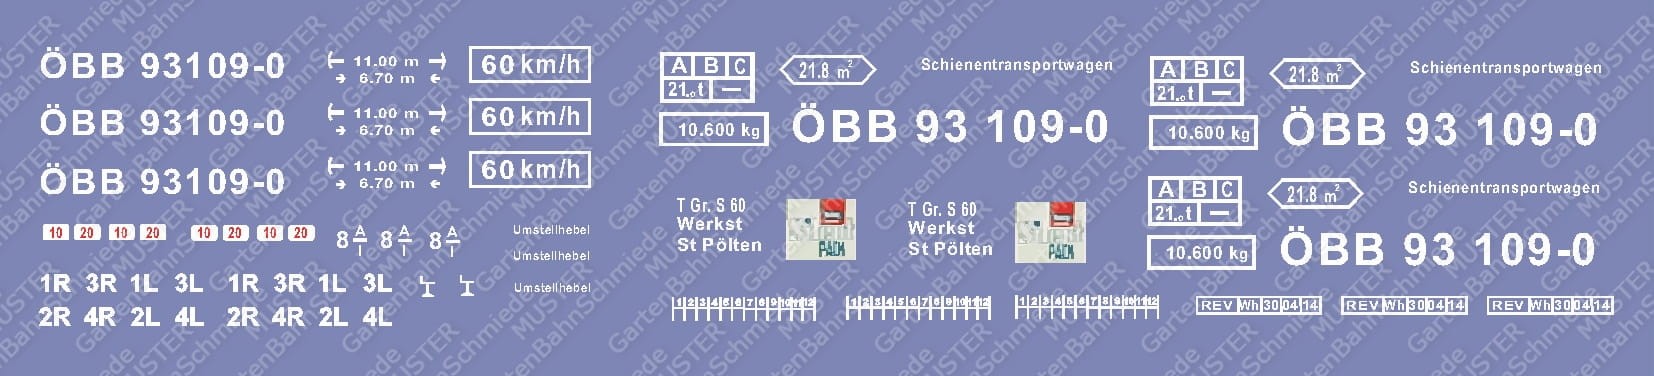 Schienentransportzug ÖBB 93109-0